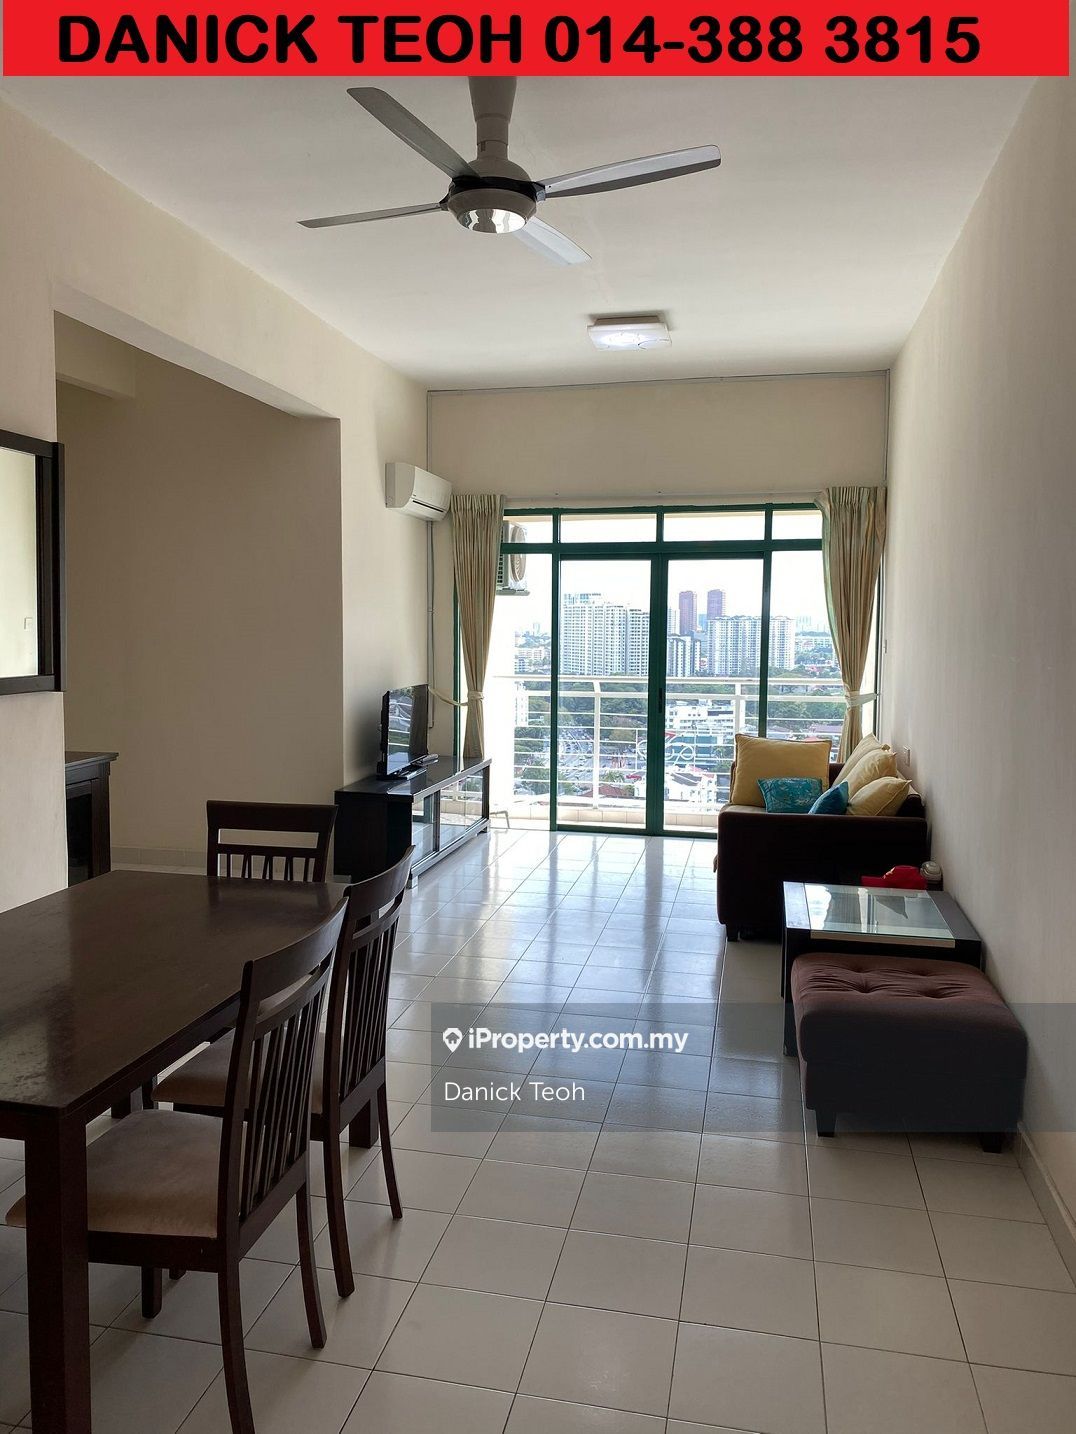 Tanjung Park Condominium Intermediate Condominium 3 bedrooms for sale